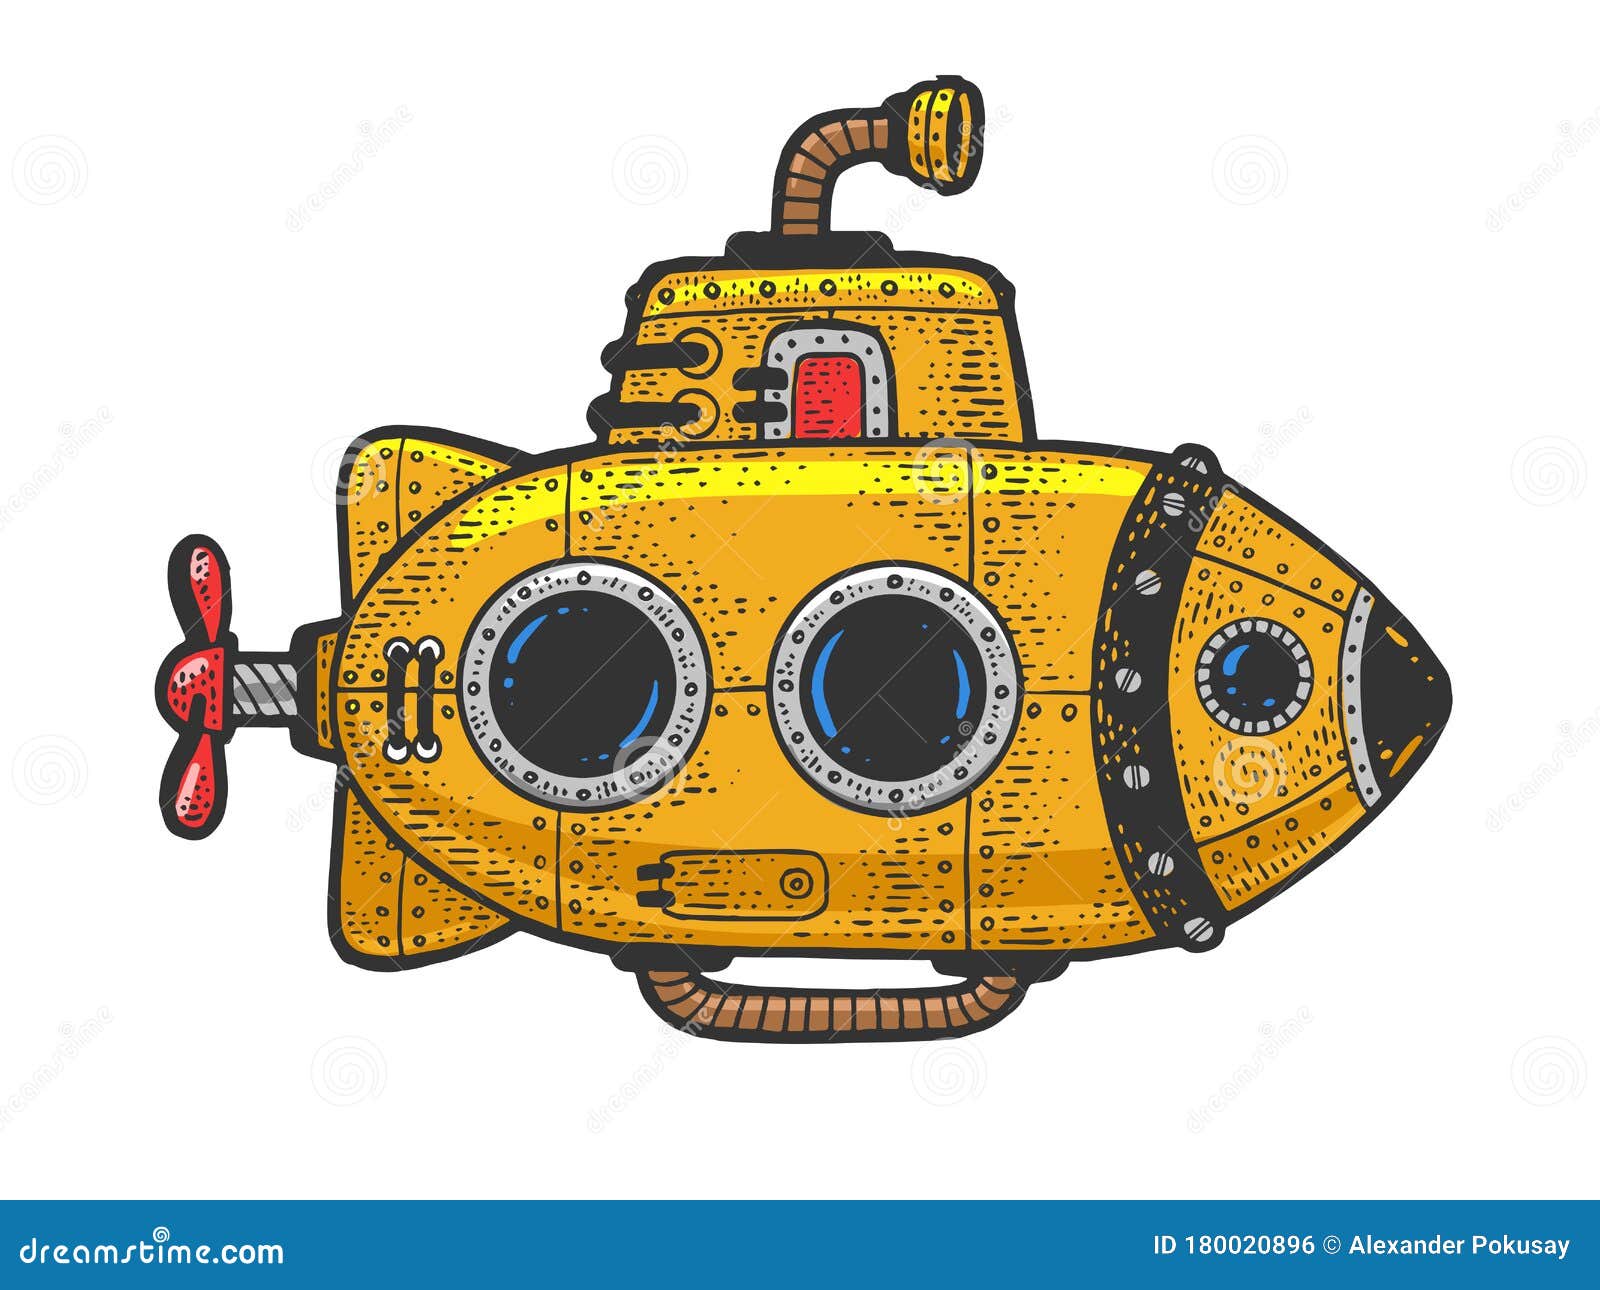 submarine cartoon image